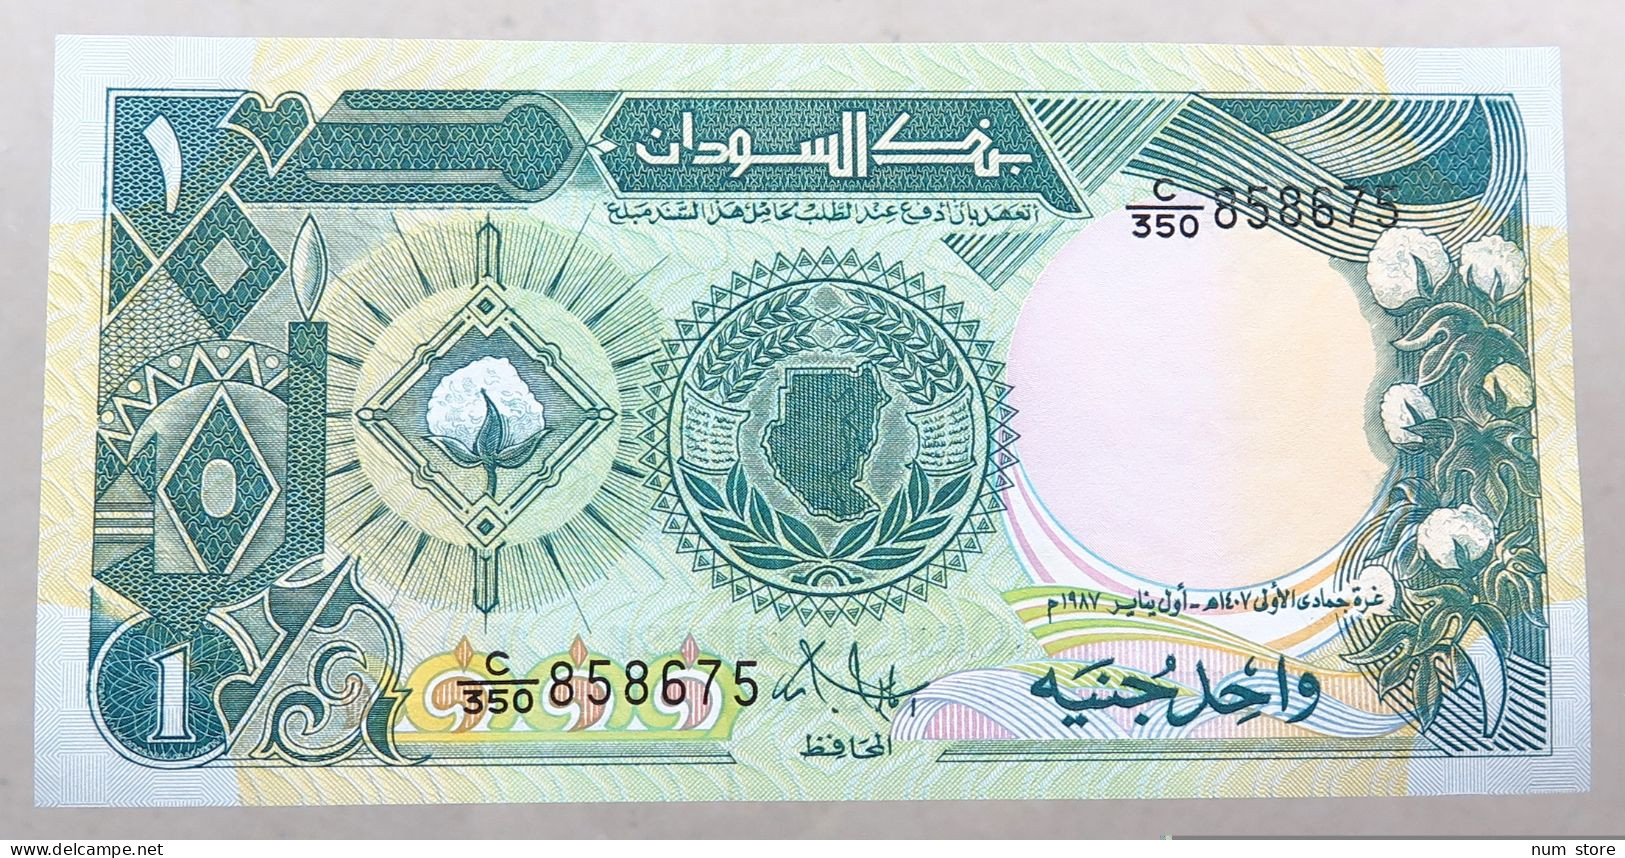 Sudan 1 Pound 1987  #alb052 1013 - Soudan